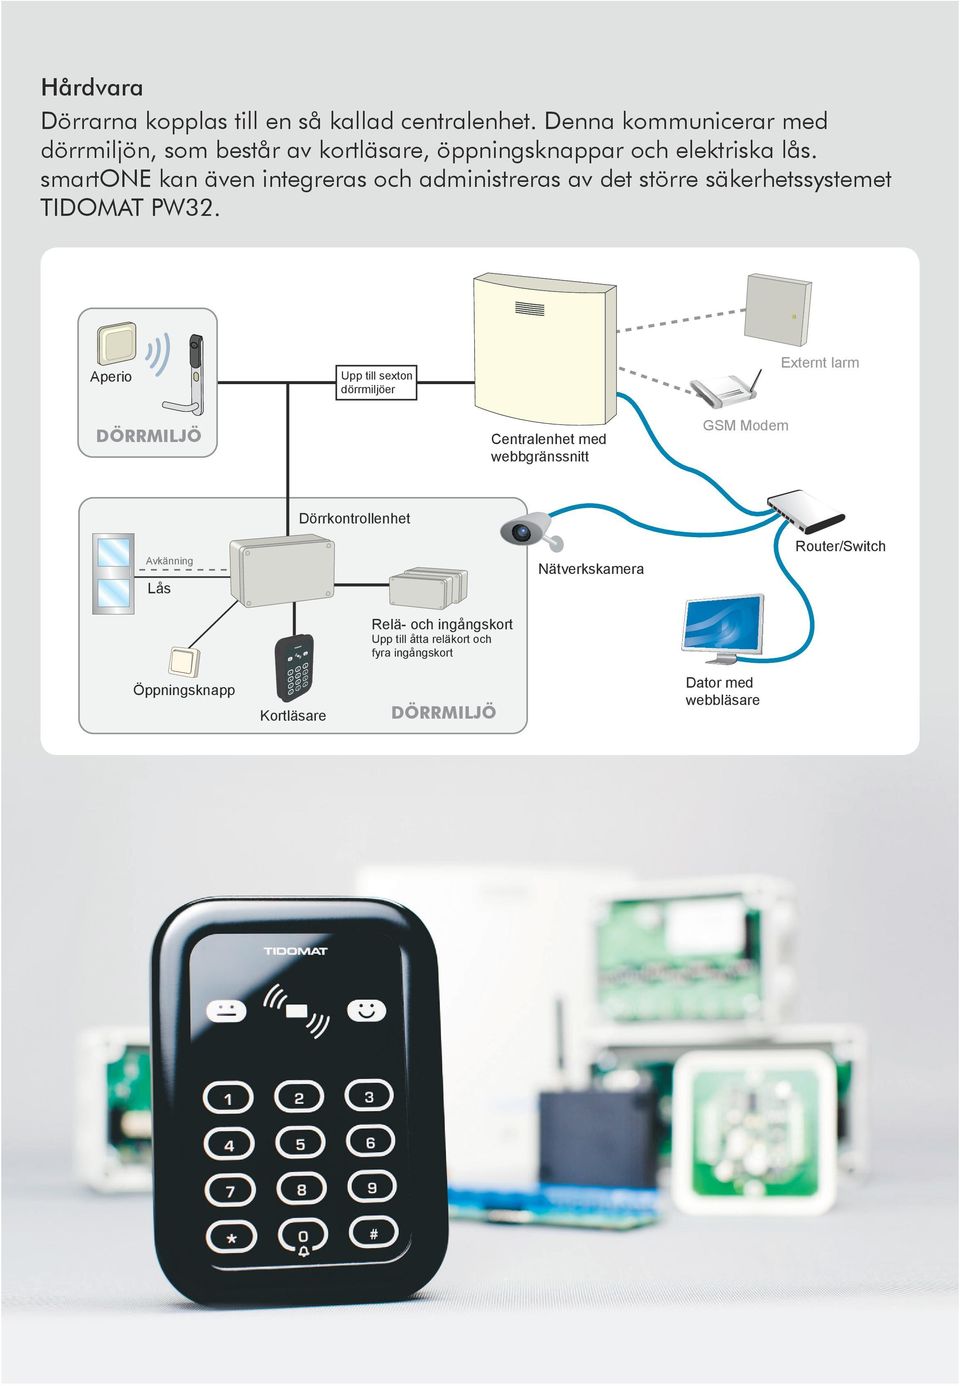 smartone kan även integreras och administreras av det större säkerhetssystemet TIDOMAT PW32.